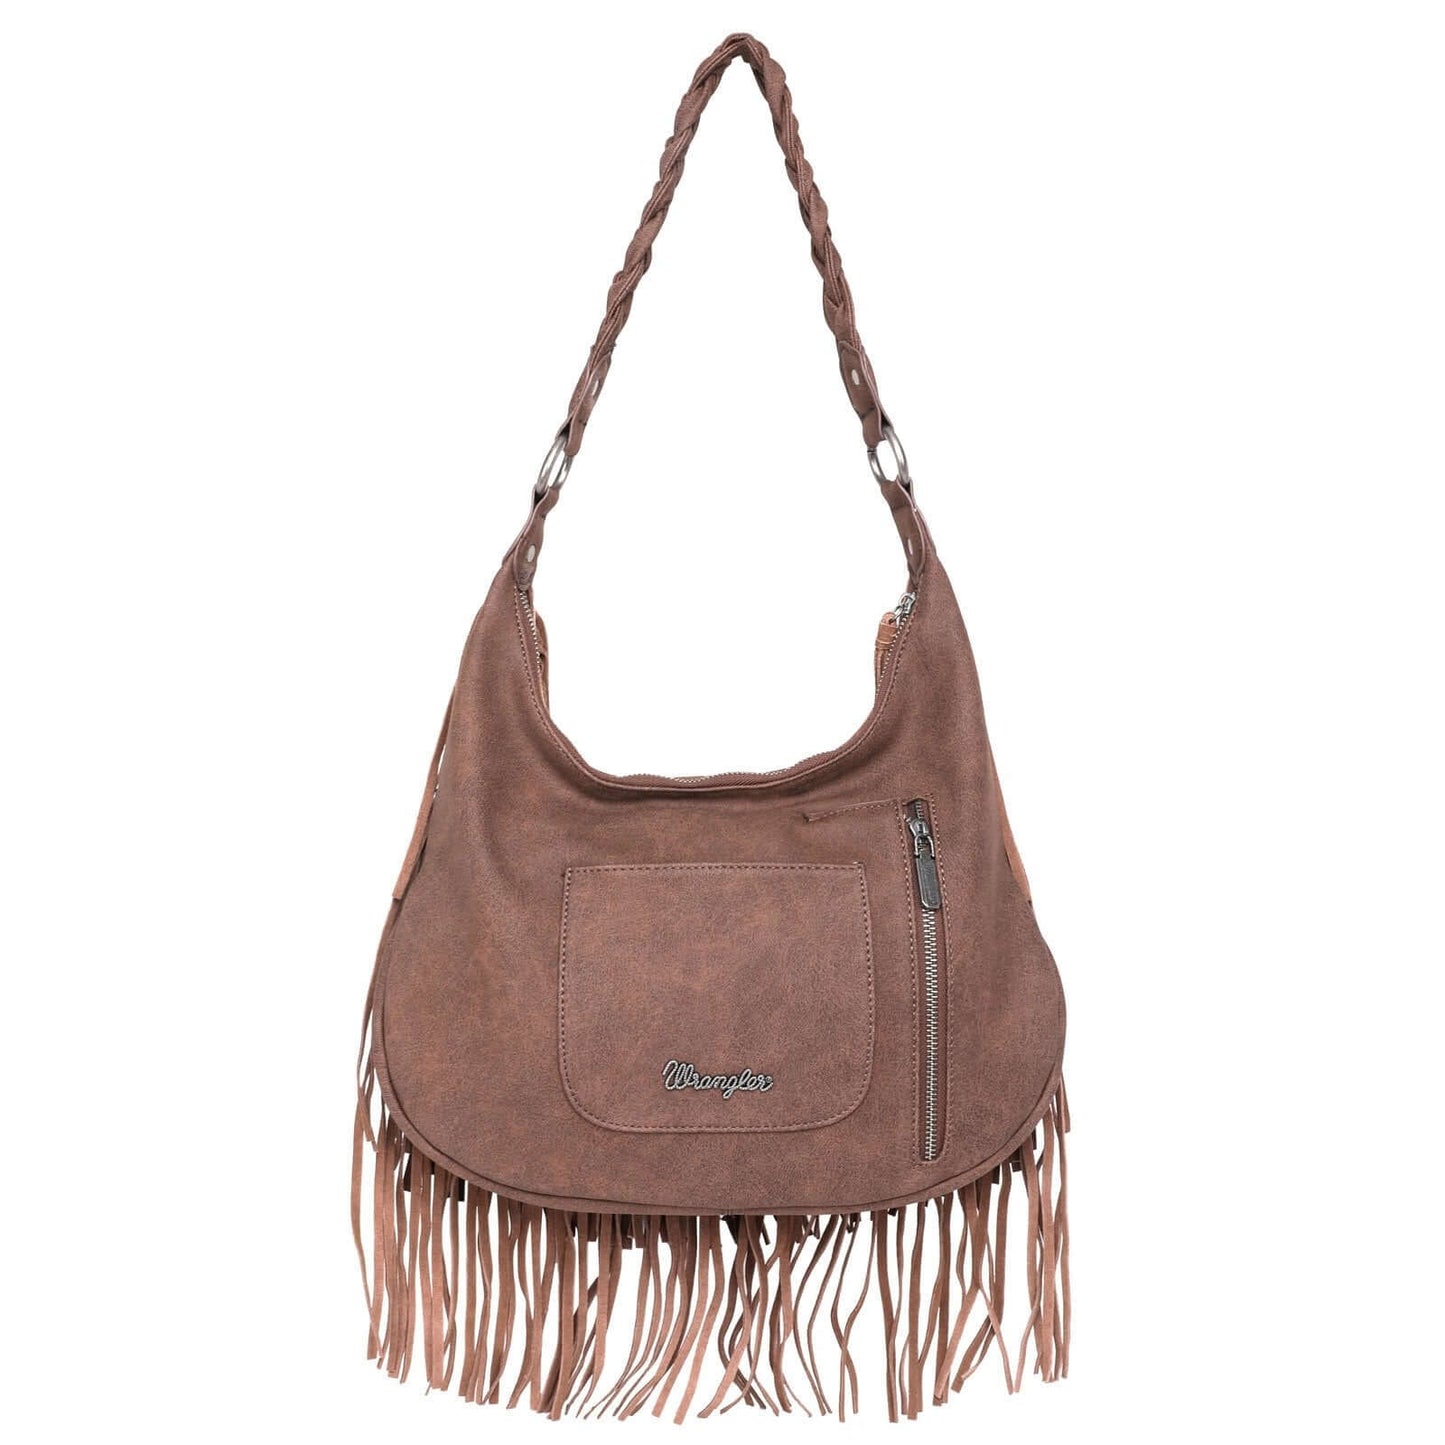 WG11-918 BR-1 Wrangler leather fringe hobo purse back- Brown